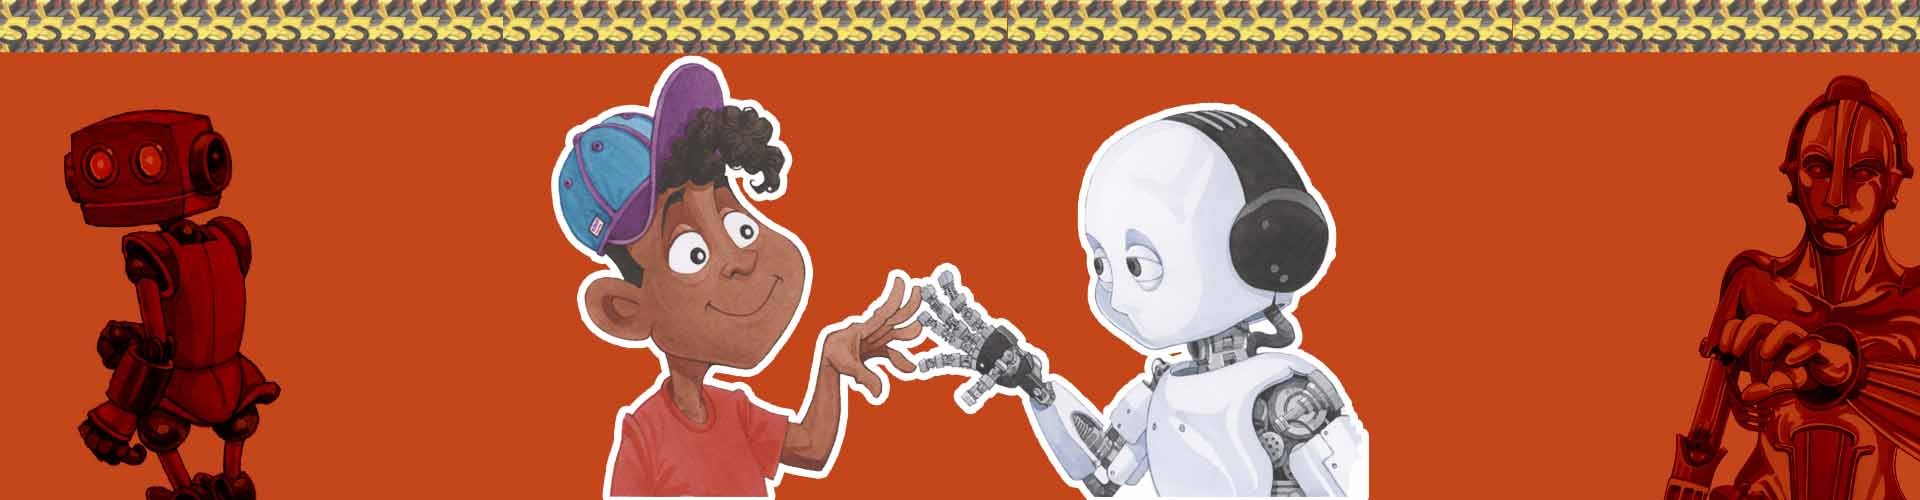 با (بی) روبات/ زندگی با روبات بهتر است یا بی روبات؟